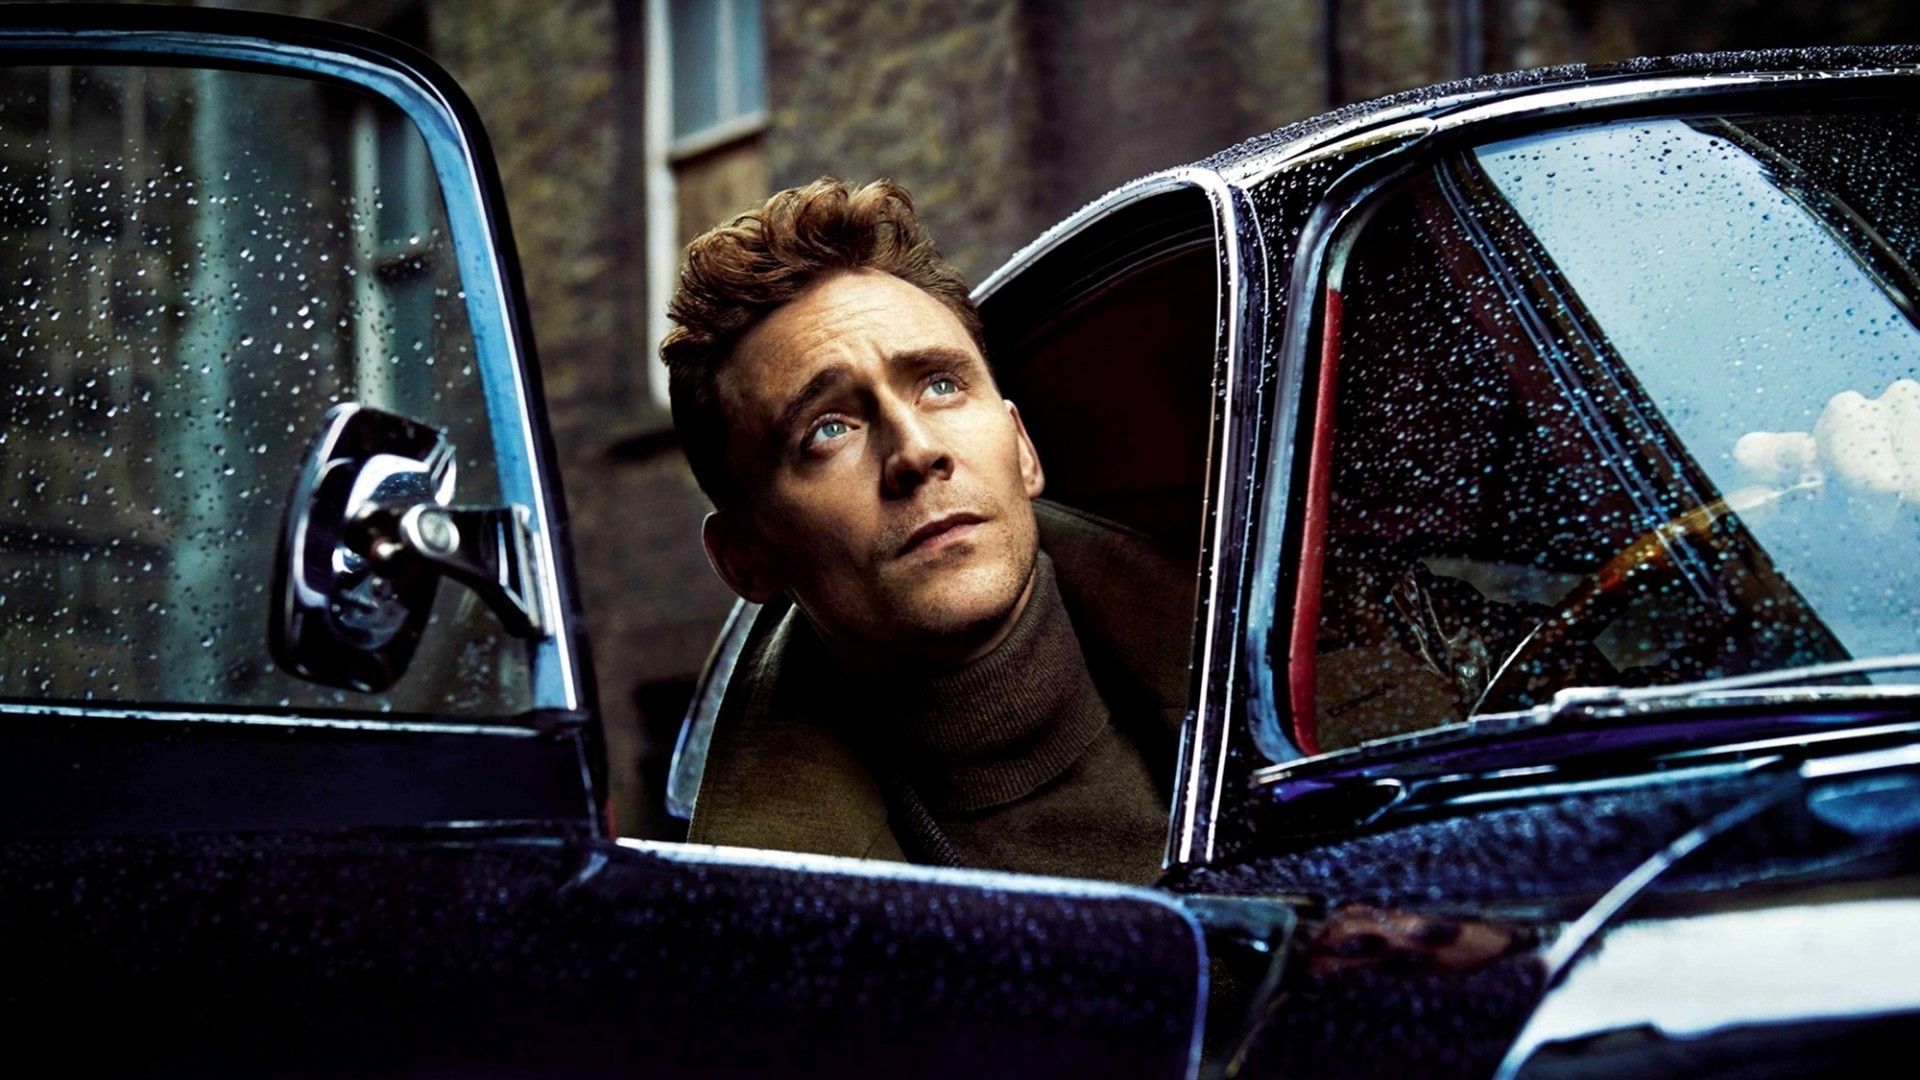 Tom Hiddleston Poster for 1920 x 1080 HDTV 1080p resolution